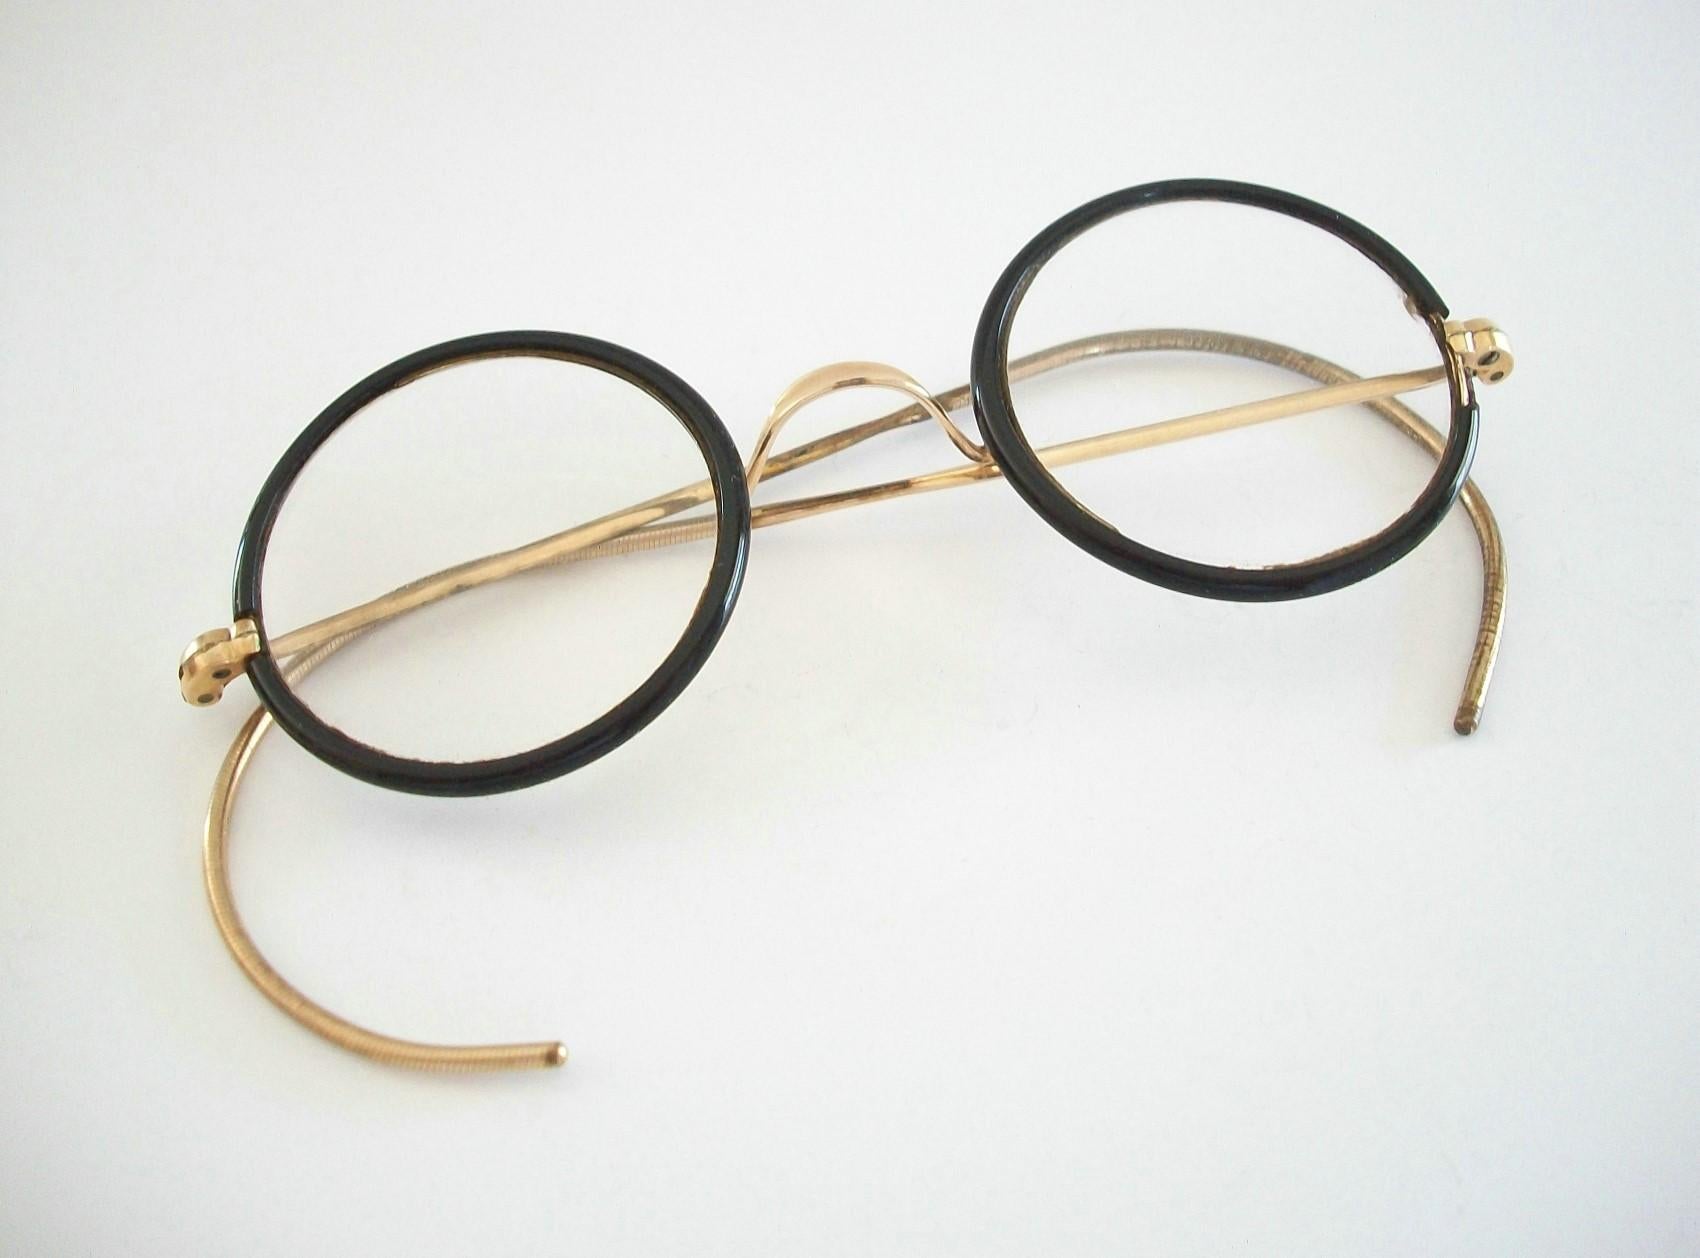 Bausch & Lomb - gafas infantiles vintage con montura redonda de esmalte negro y puente y patillas dorados - con lentes graduadas - monturas de gran calidad - firmadas B&L (ver foto) - Canadá - hacia la década de 1940.

Buen estado vintage -